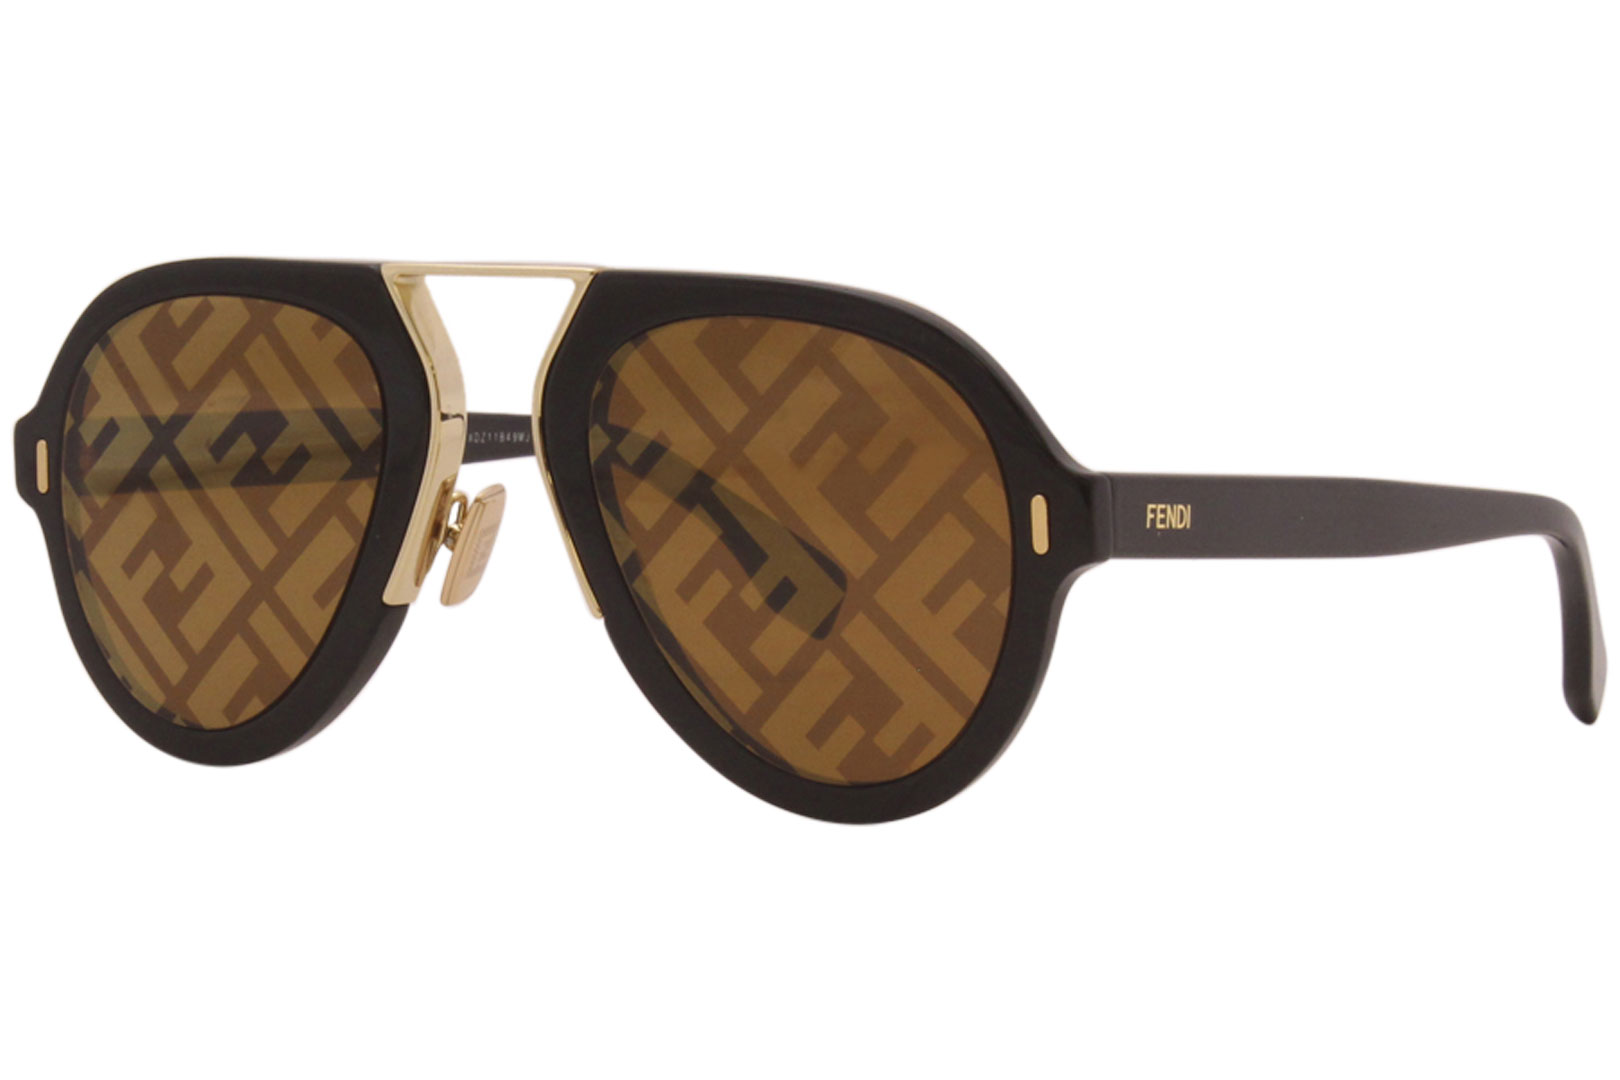 Fendi Sunglasses Men's FF-M0104/S 807EB Black-Gold/Brown Decor Mirror ...